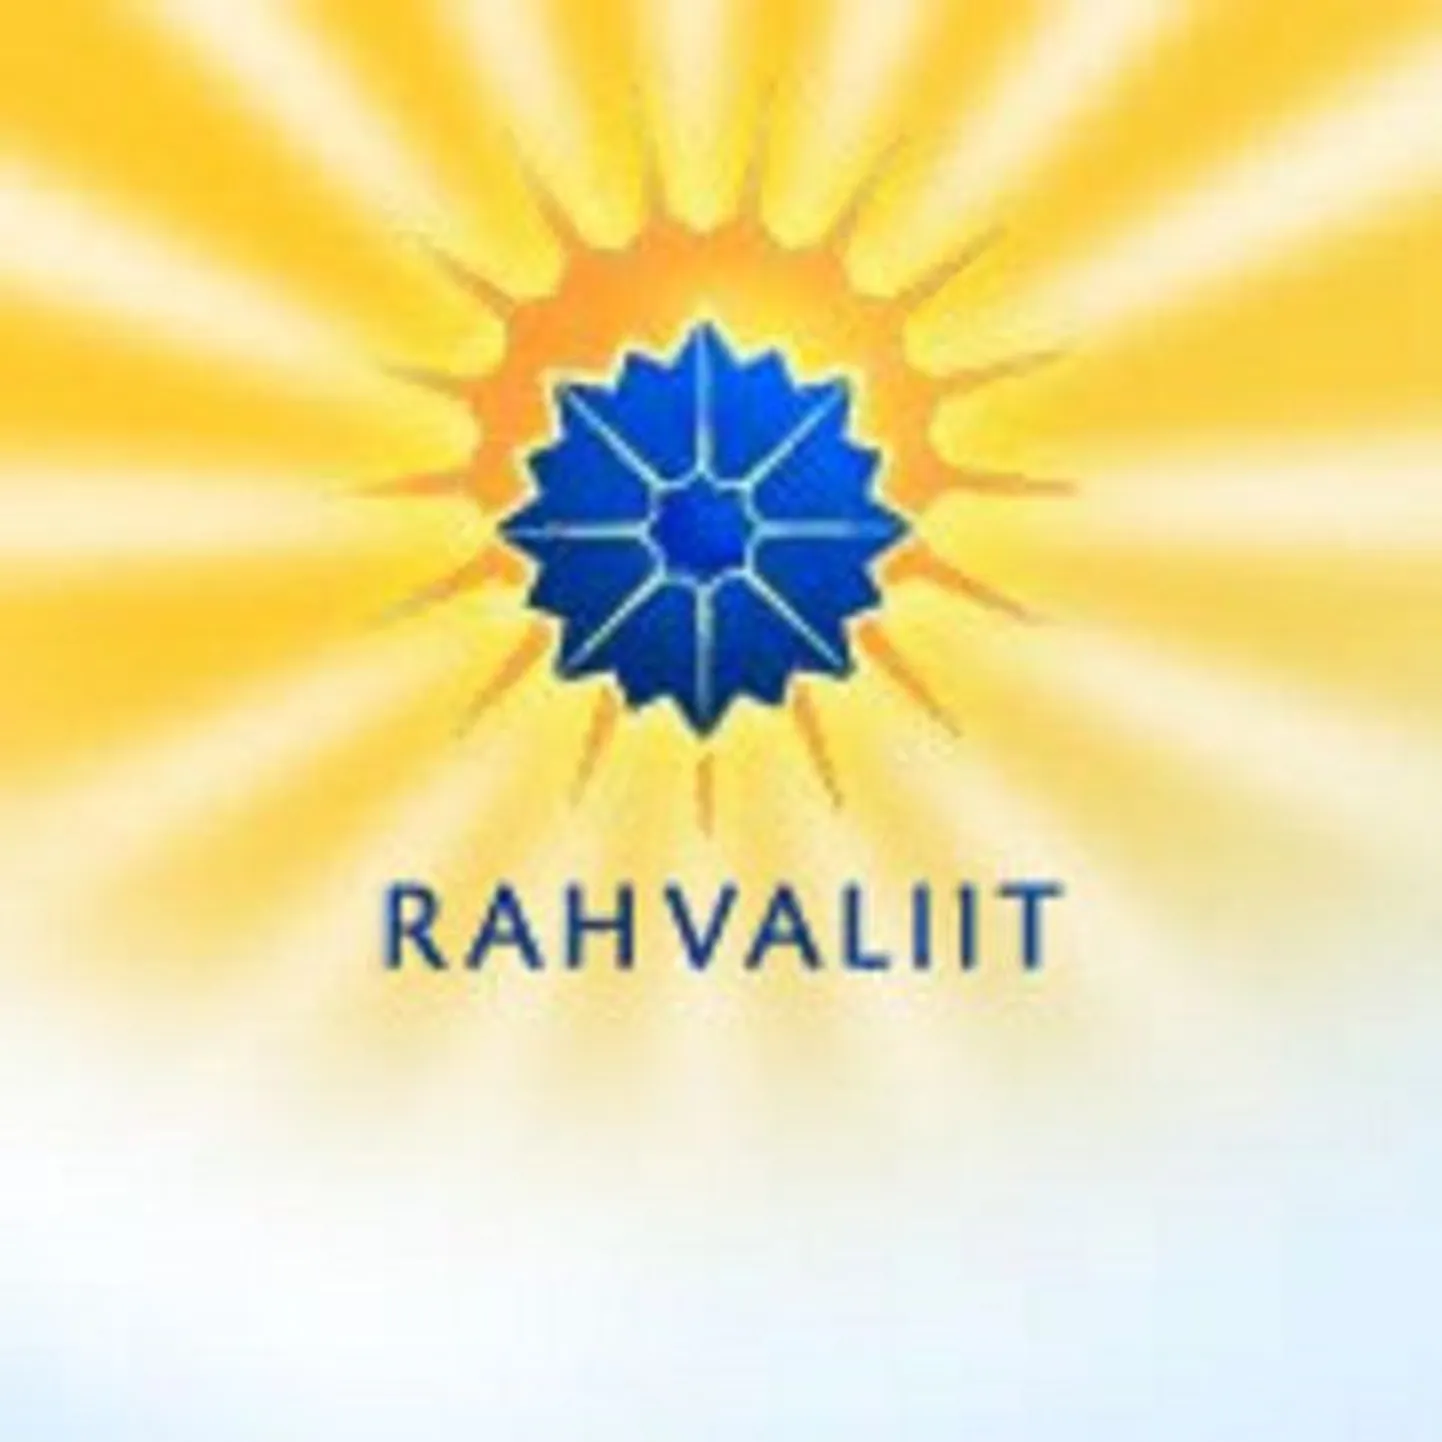 Eestimaa Rahvaliidu logo